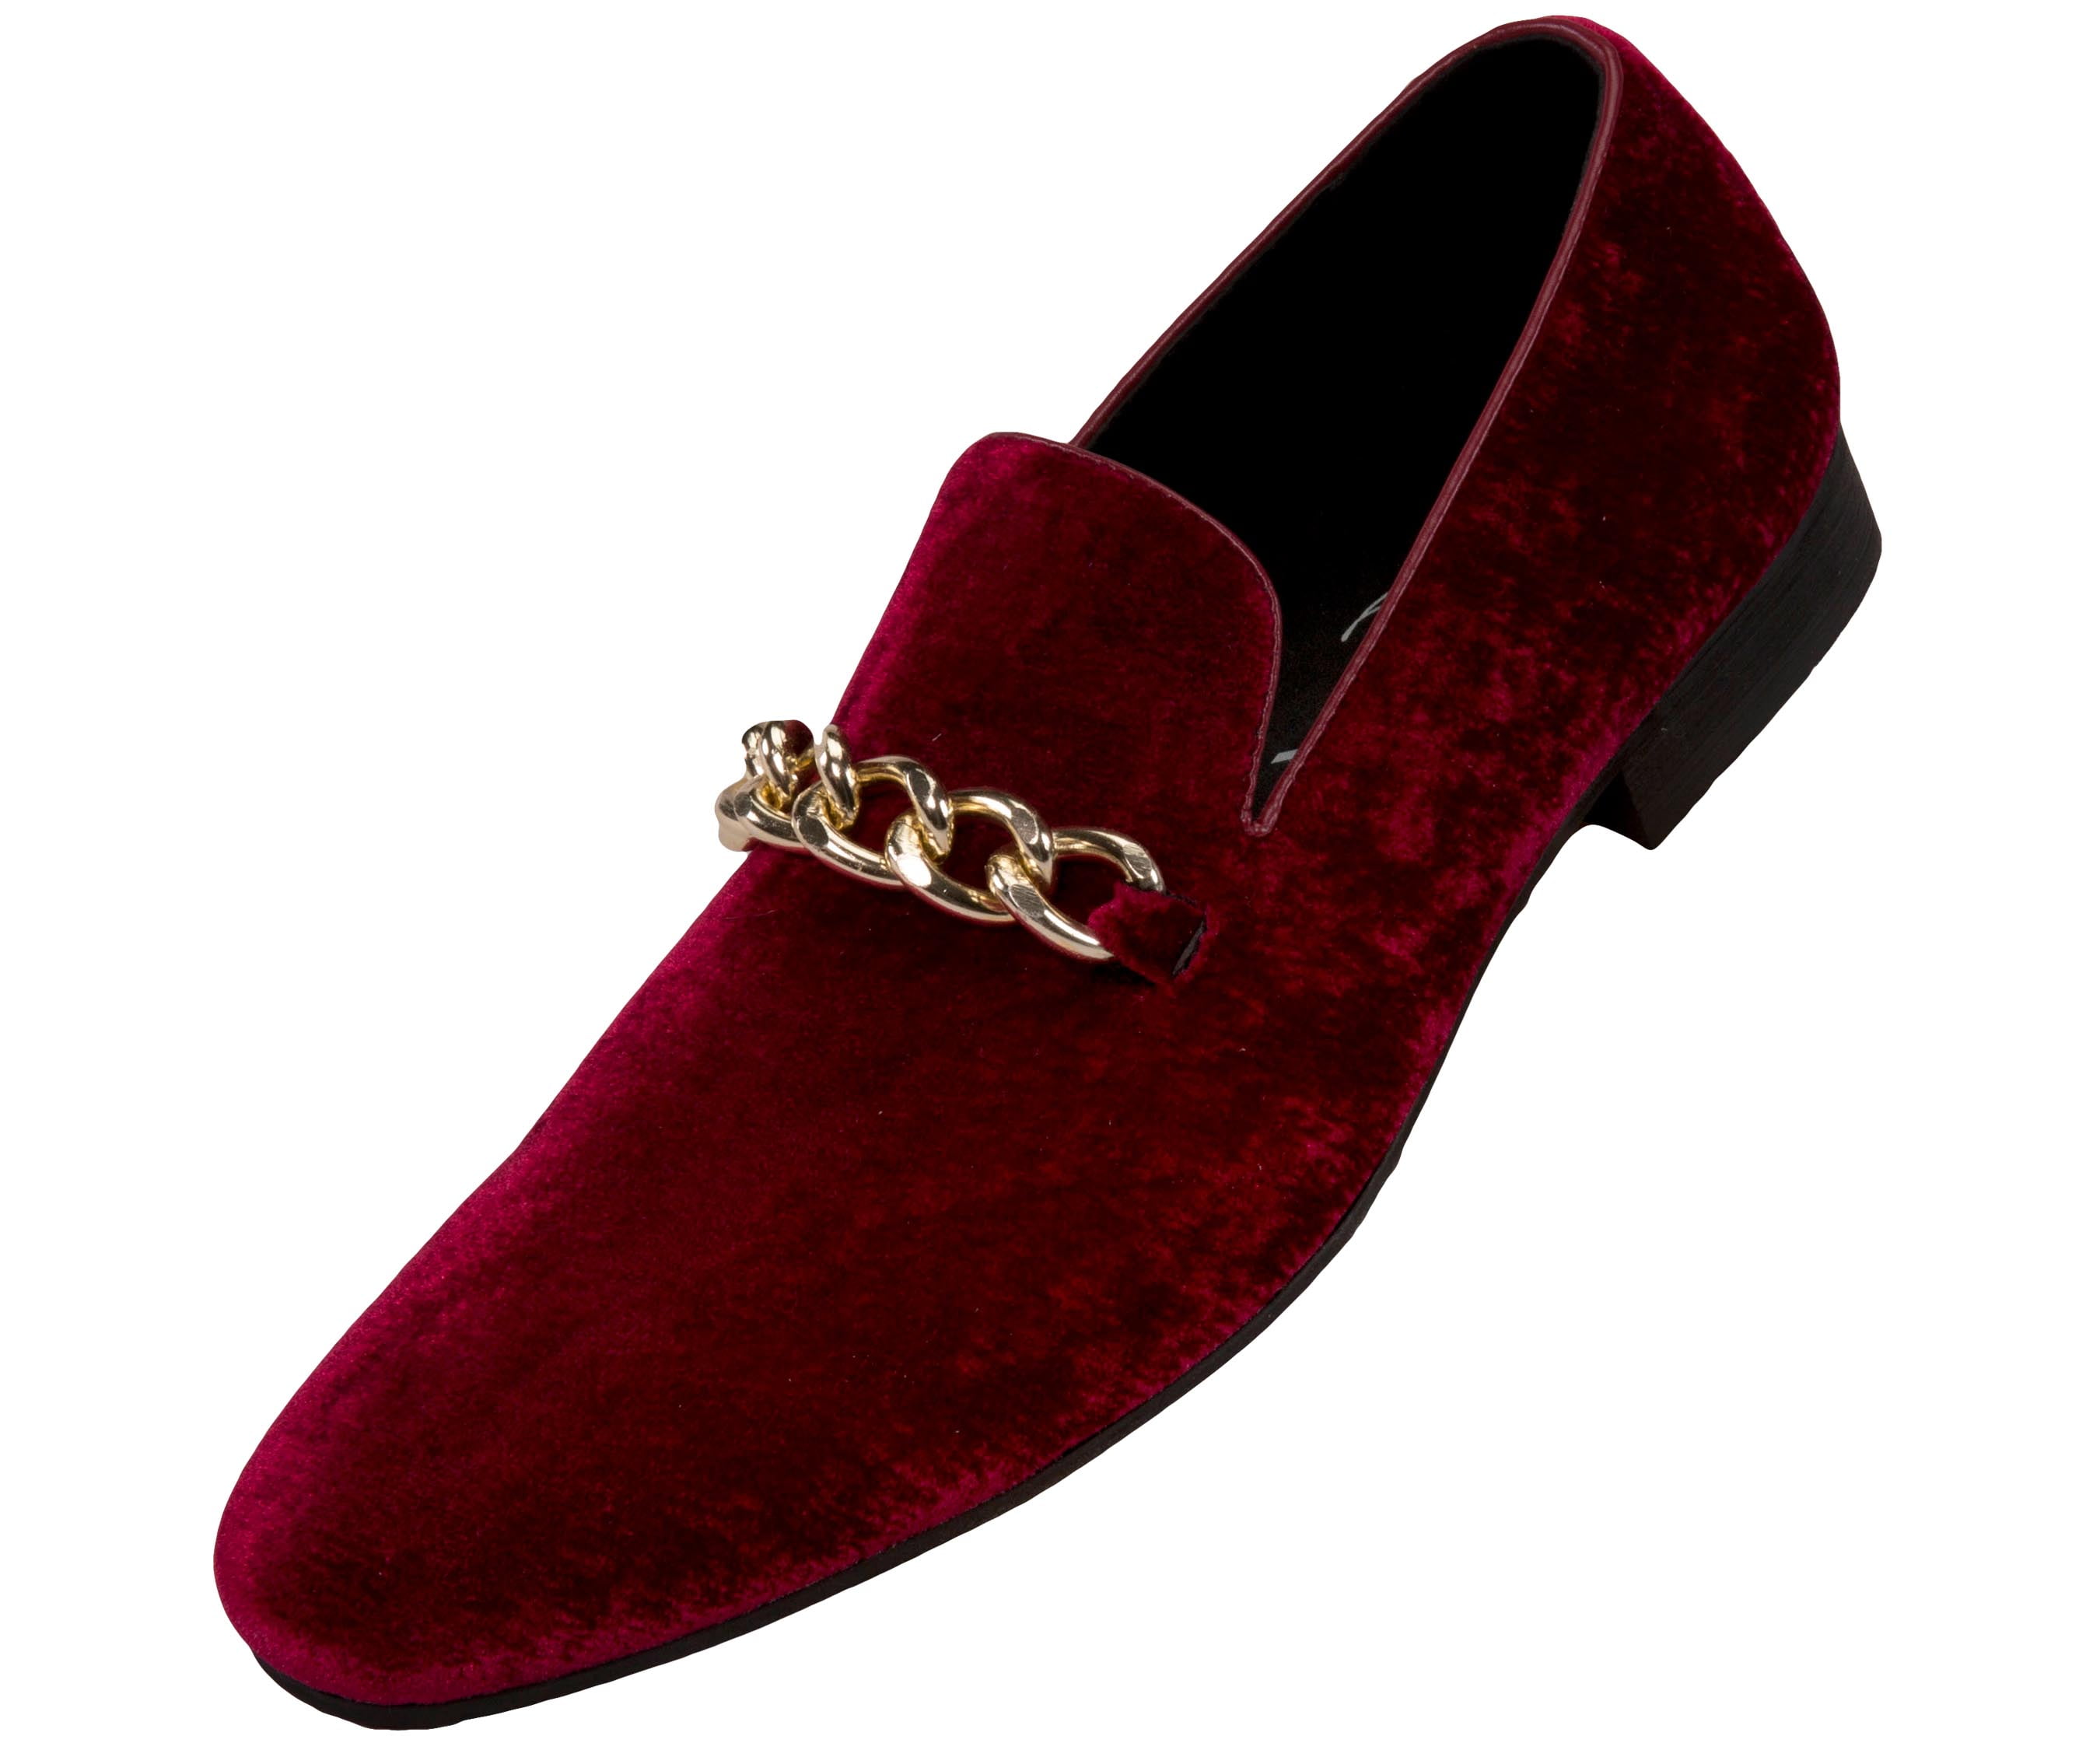 mens burgundy slip on dress shoes